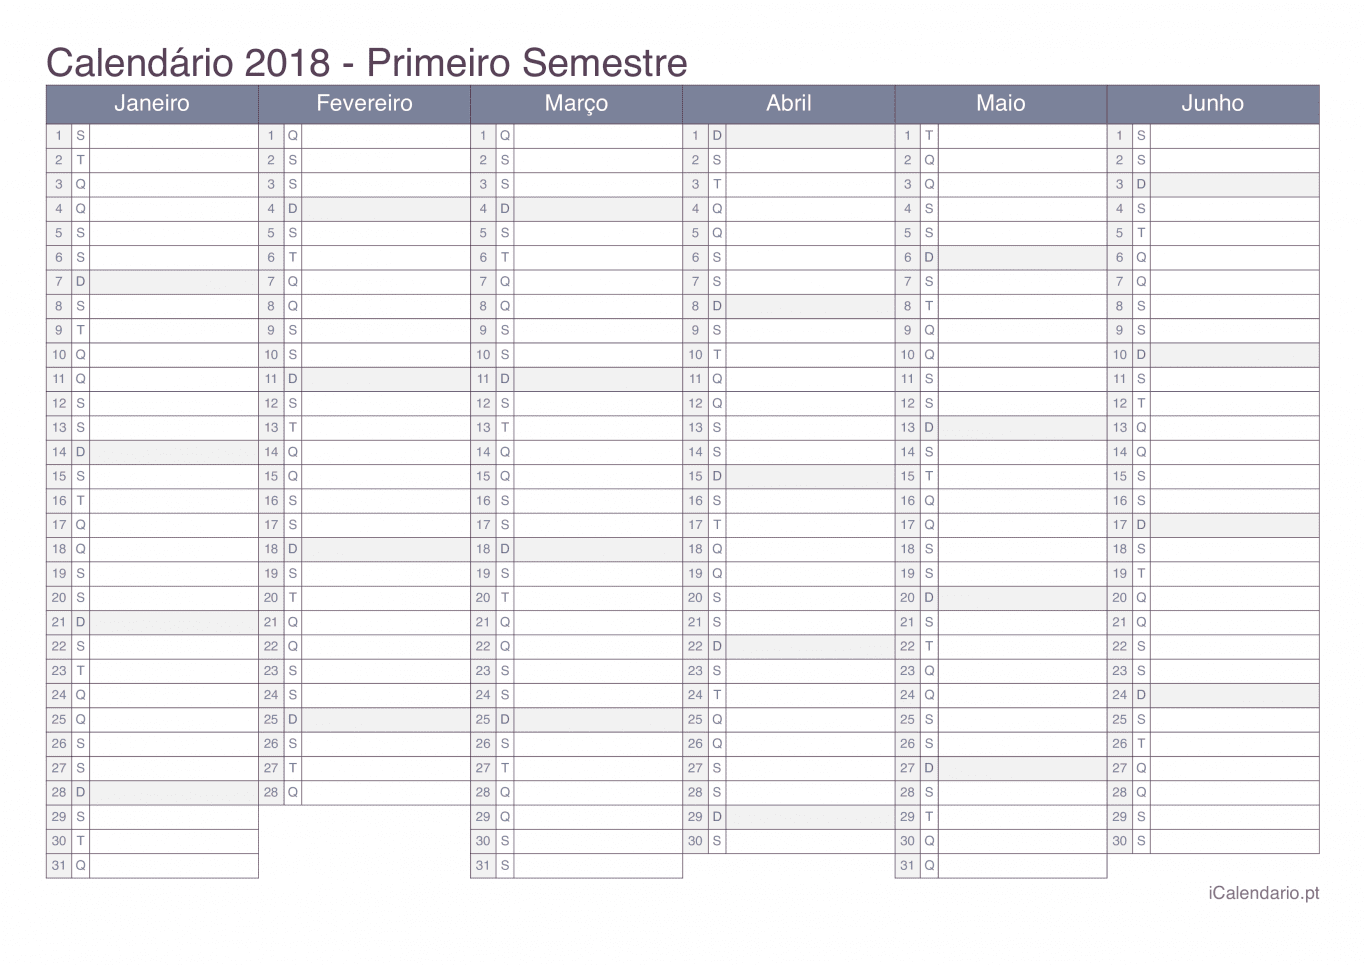 Calendário por semestre 2018 - Office